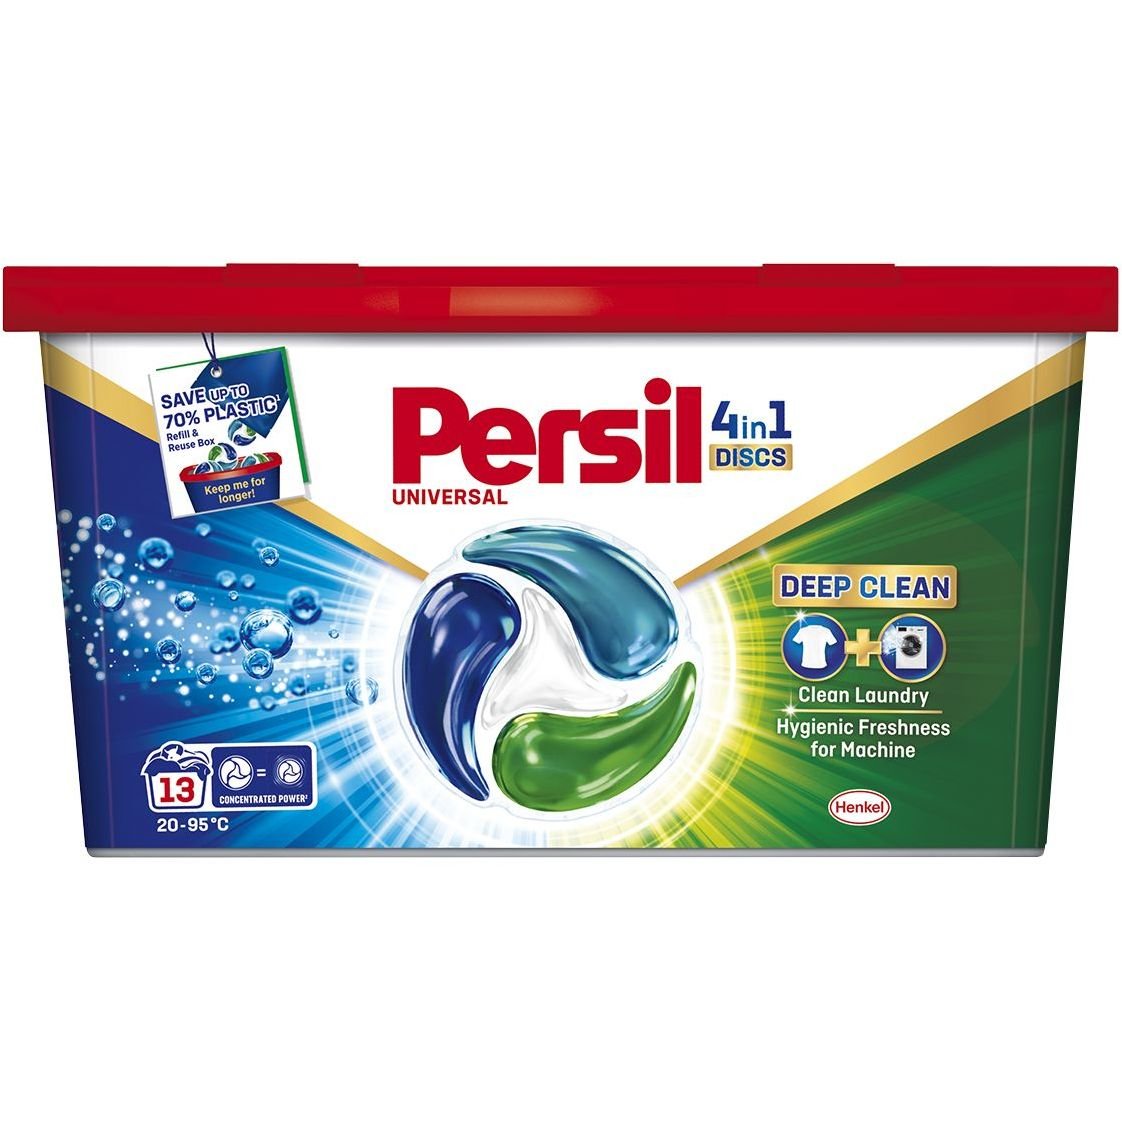 Диски для прання Persil Deep Clean Universal 4 in 1 Discs 13 шт. - фото 1